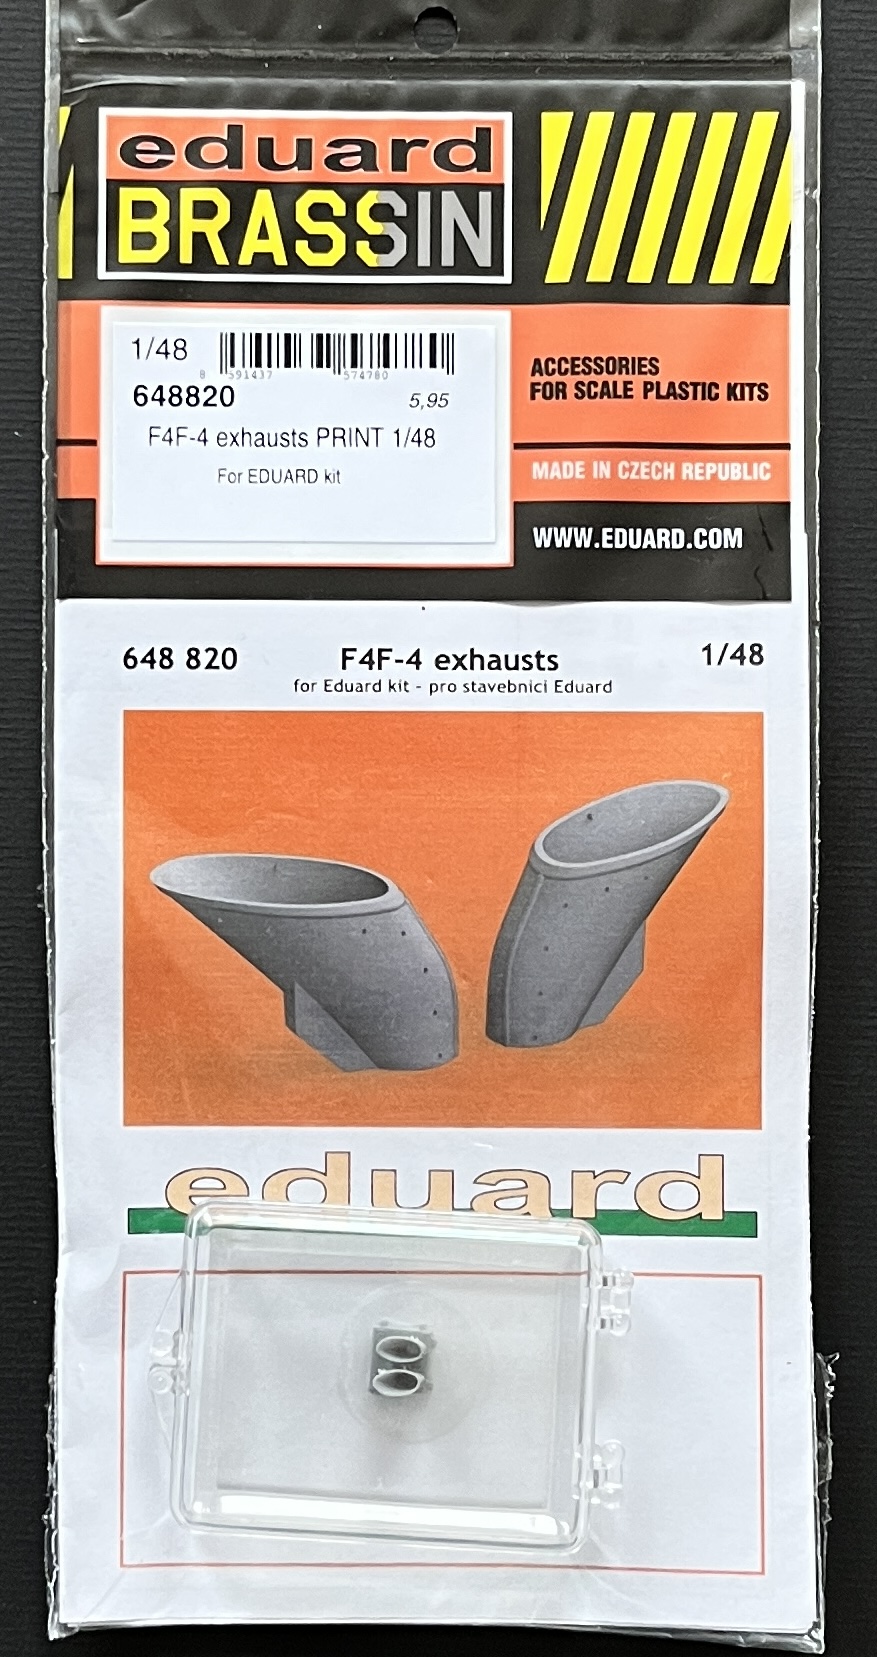 Eduard Brassin - F4F-4 exhausts